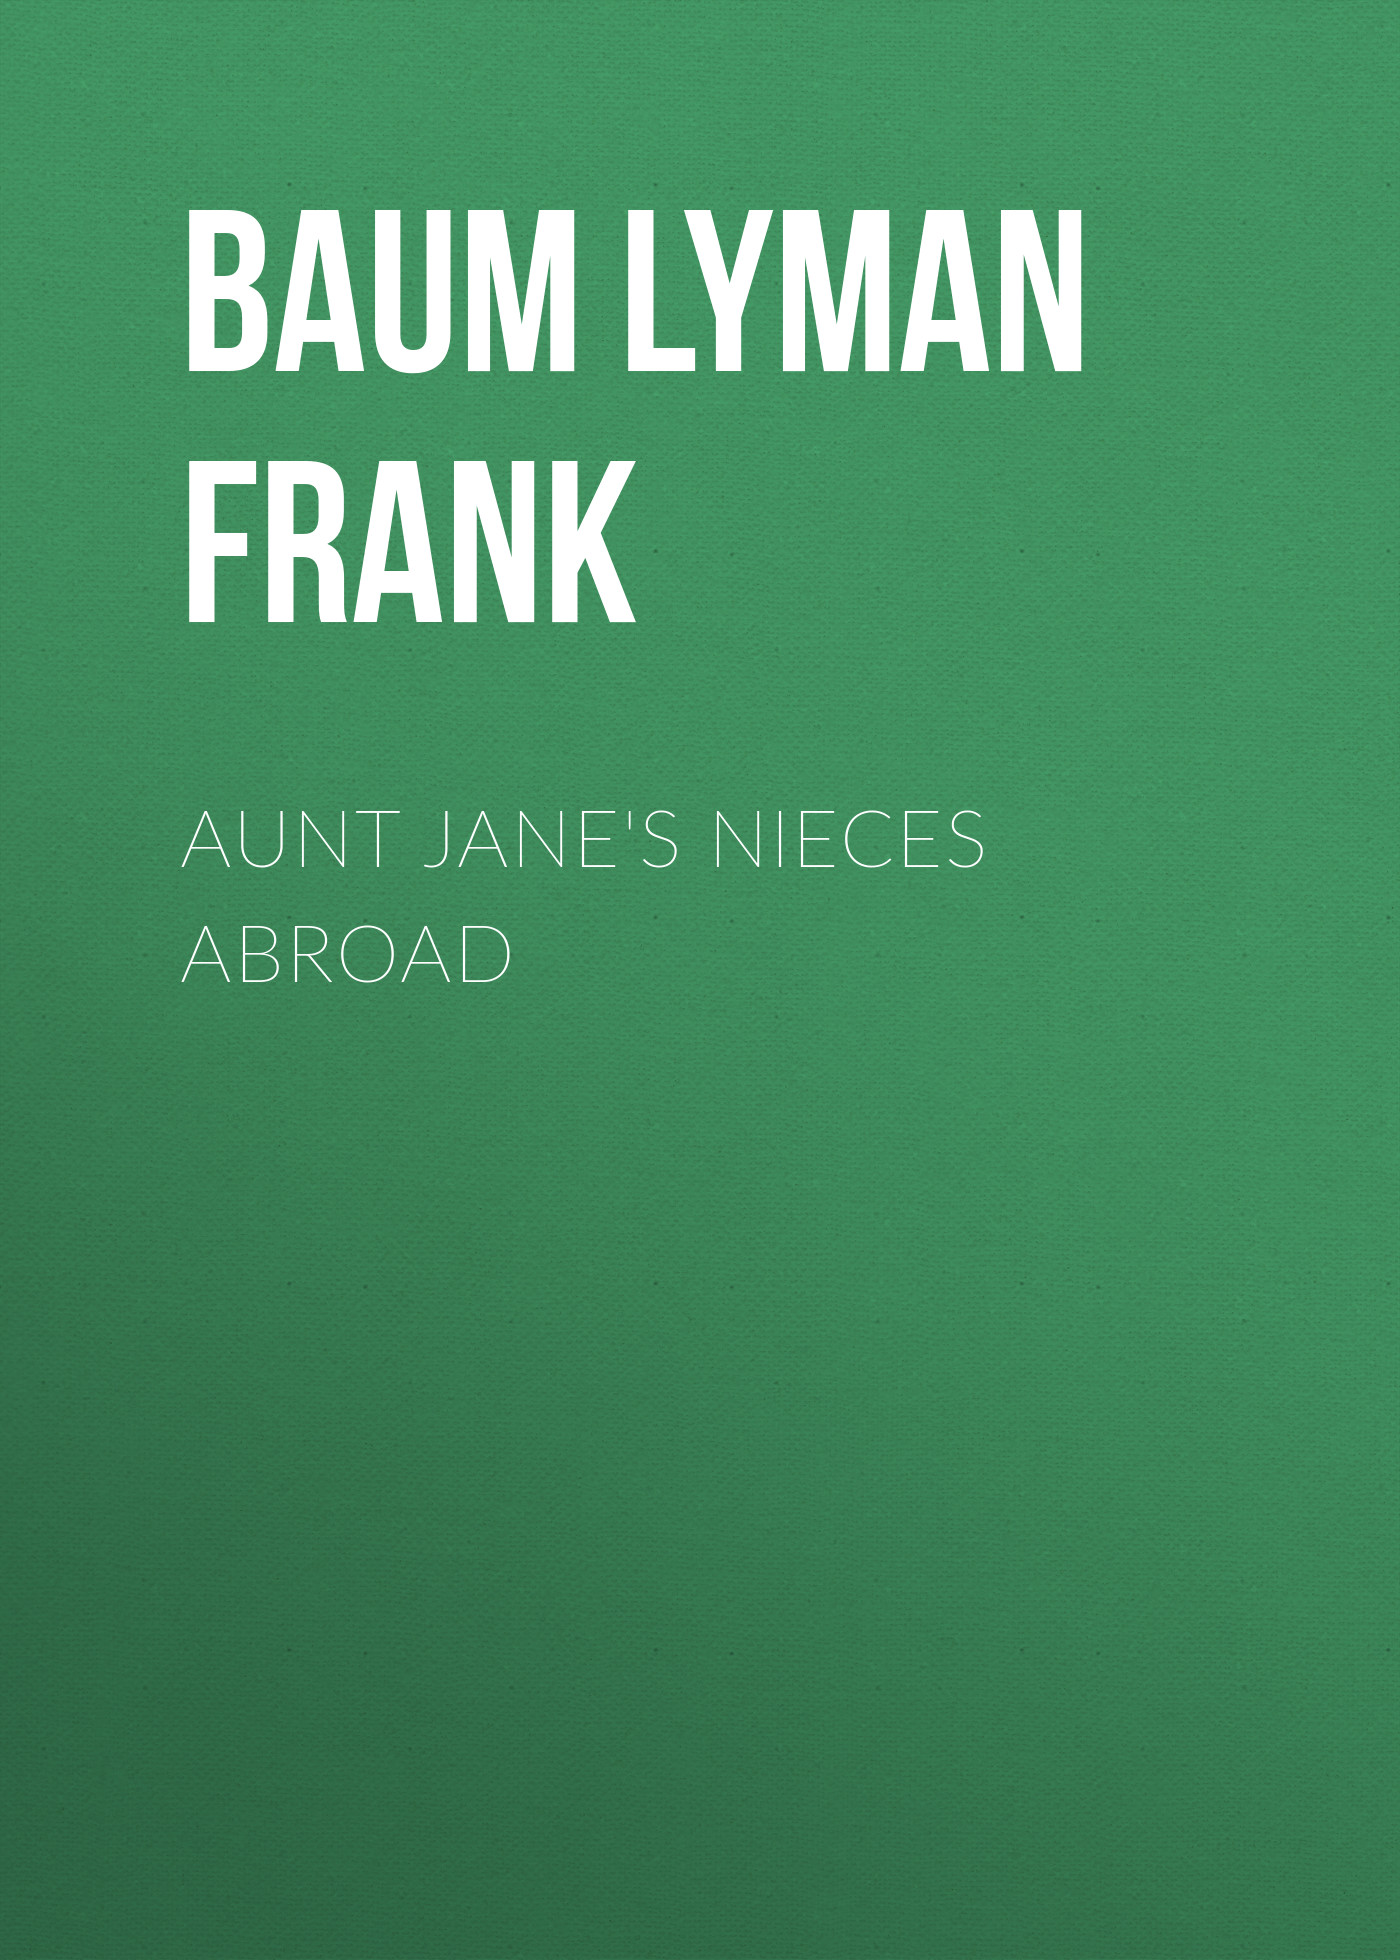 Книга Aunt Jane's Nieces Abroad из серии , созданная Lyman Baum, может относится к жанру Зарубежная старинная литература, Зарубежная классика. Стоимость электронной книги Aunt Jane's Nieces Abroad с идентификатором 25019331 составляет 0 руб.